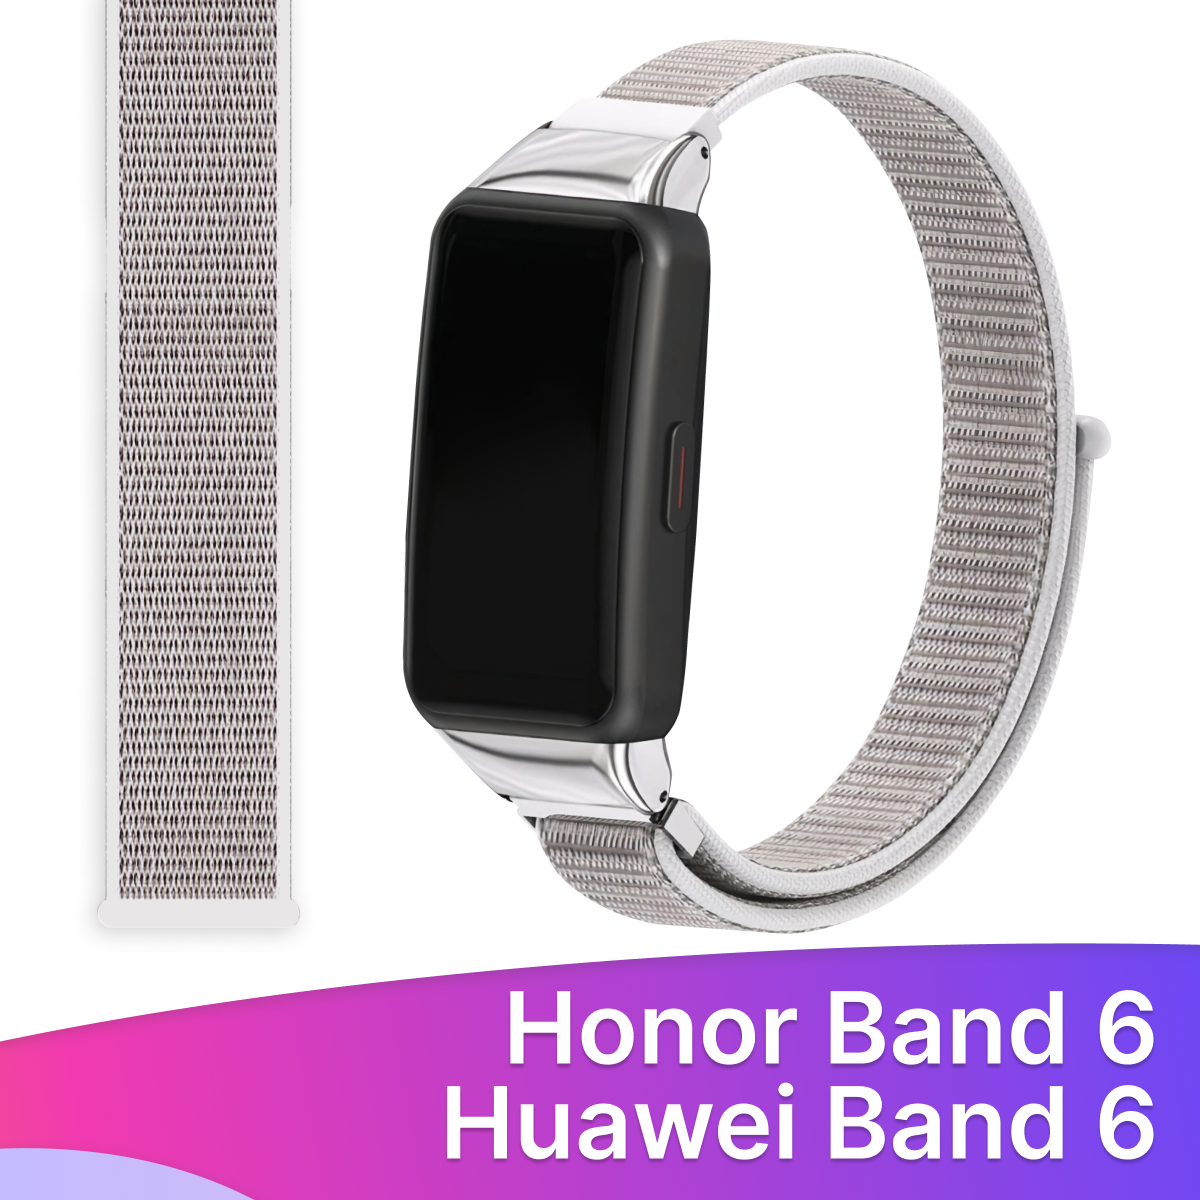 Нейлоновый ремешок для фитнес-браслета Honor Band 6 и Huawei Band 6 / Тканевый браслет на смарт часы Хонор Бэнд 6 и Хуавей Бэнд 6 / Сине-фиолетовый